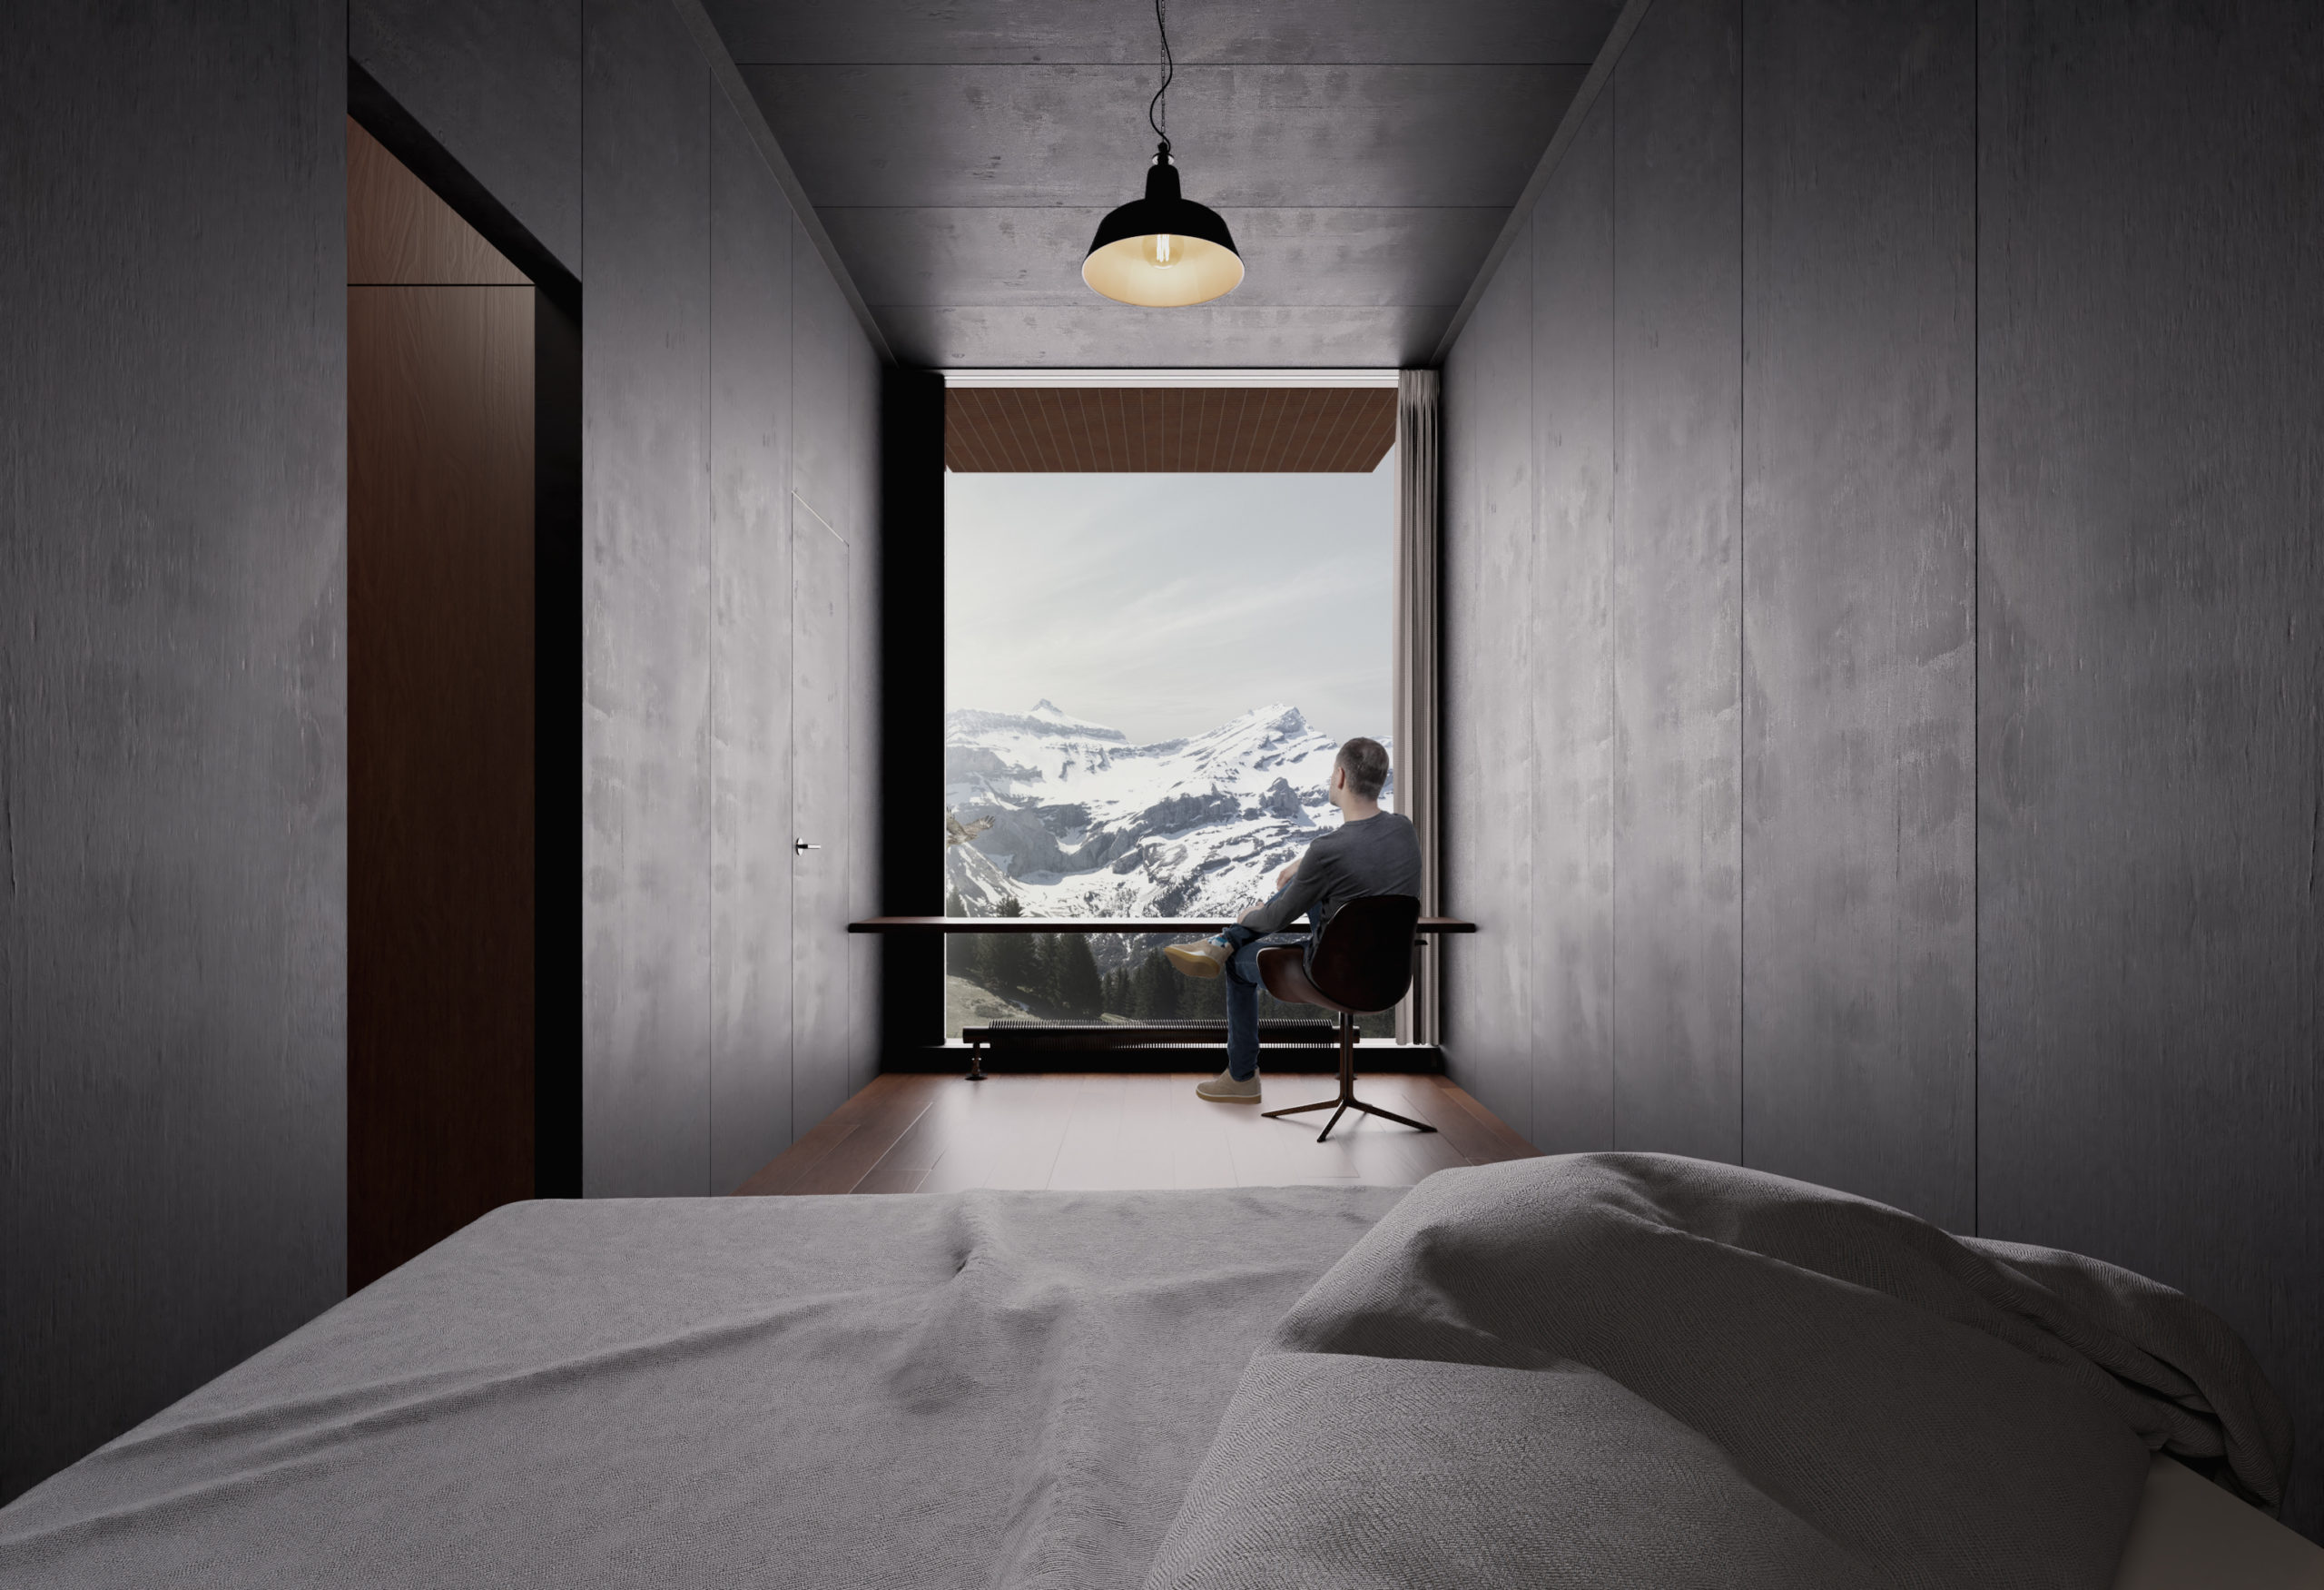 Représentation d'une chambre qui donne vue sur les alpes enneigées